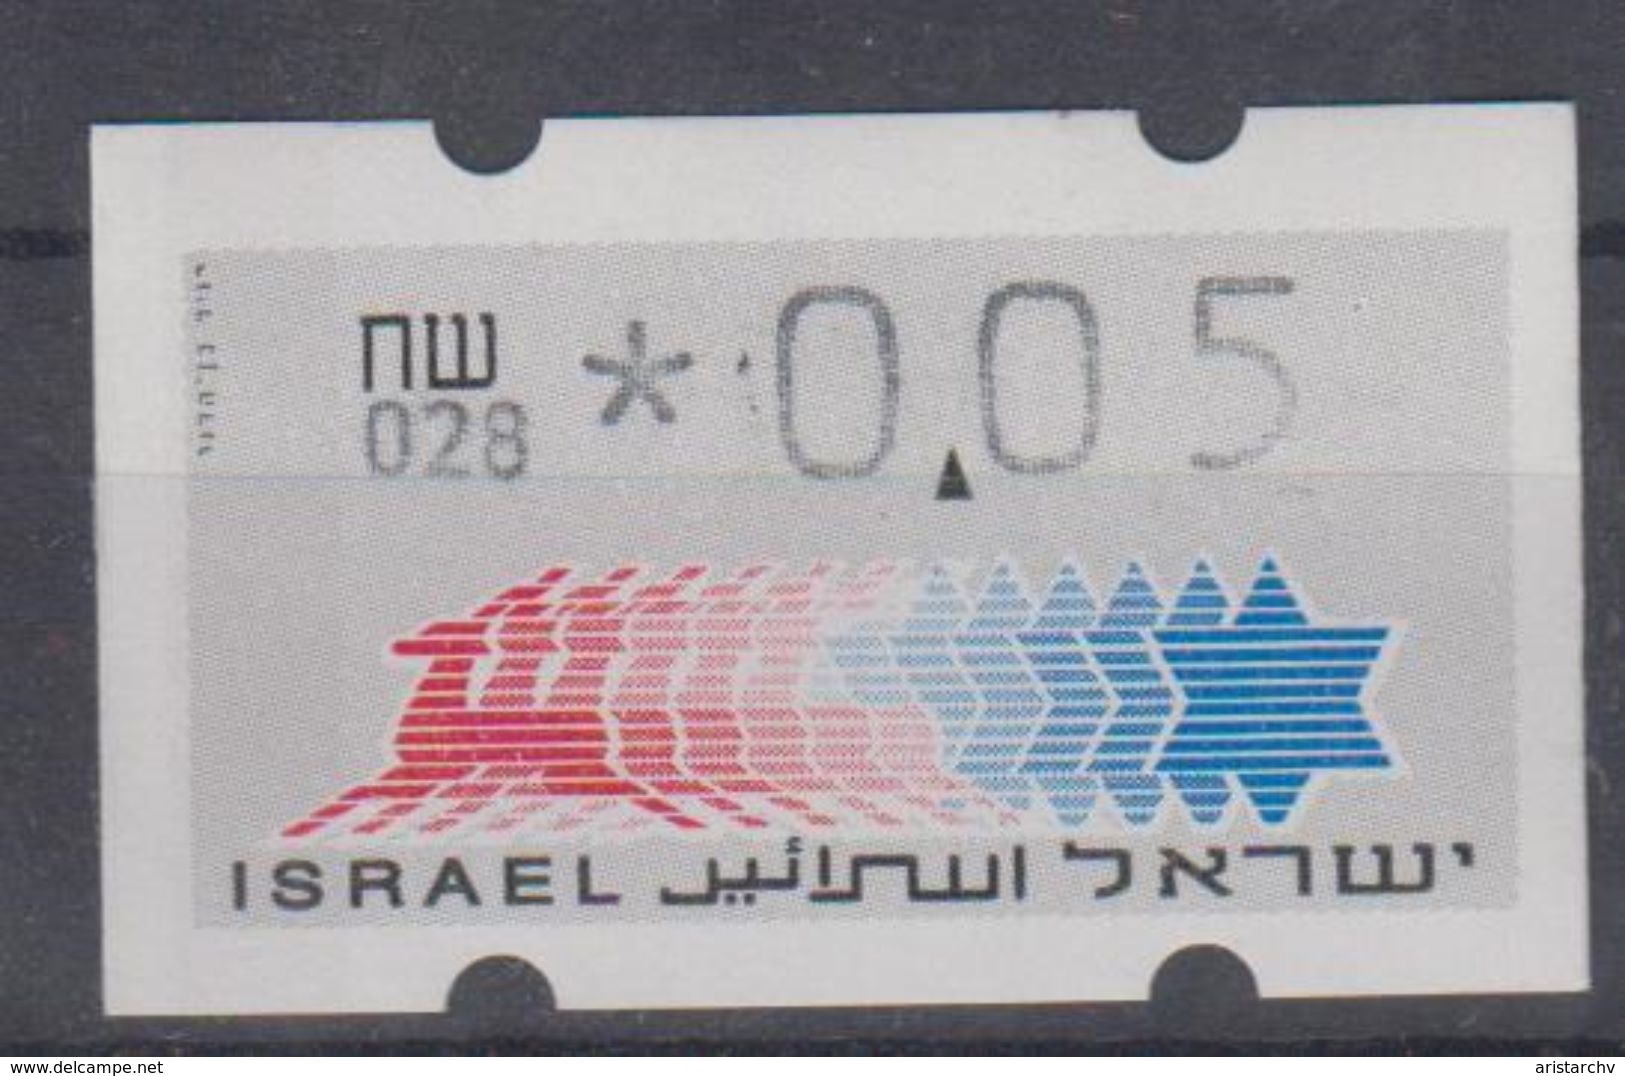 ISRAEL 1988 KLUSSENDORF ATM 0.05 SHEKELS 2 DIFFERENT KINDS OF PAPER NUMBER 028 - Franking Labels